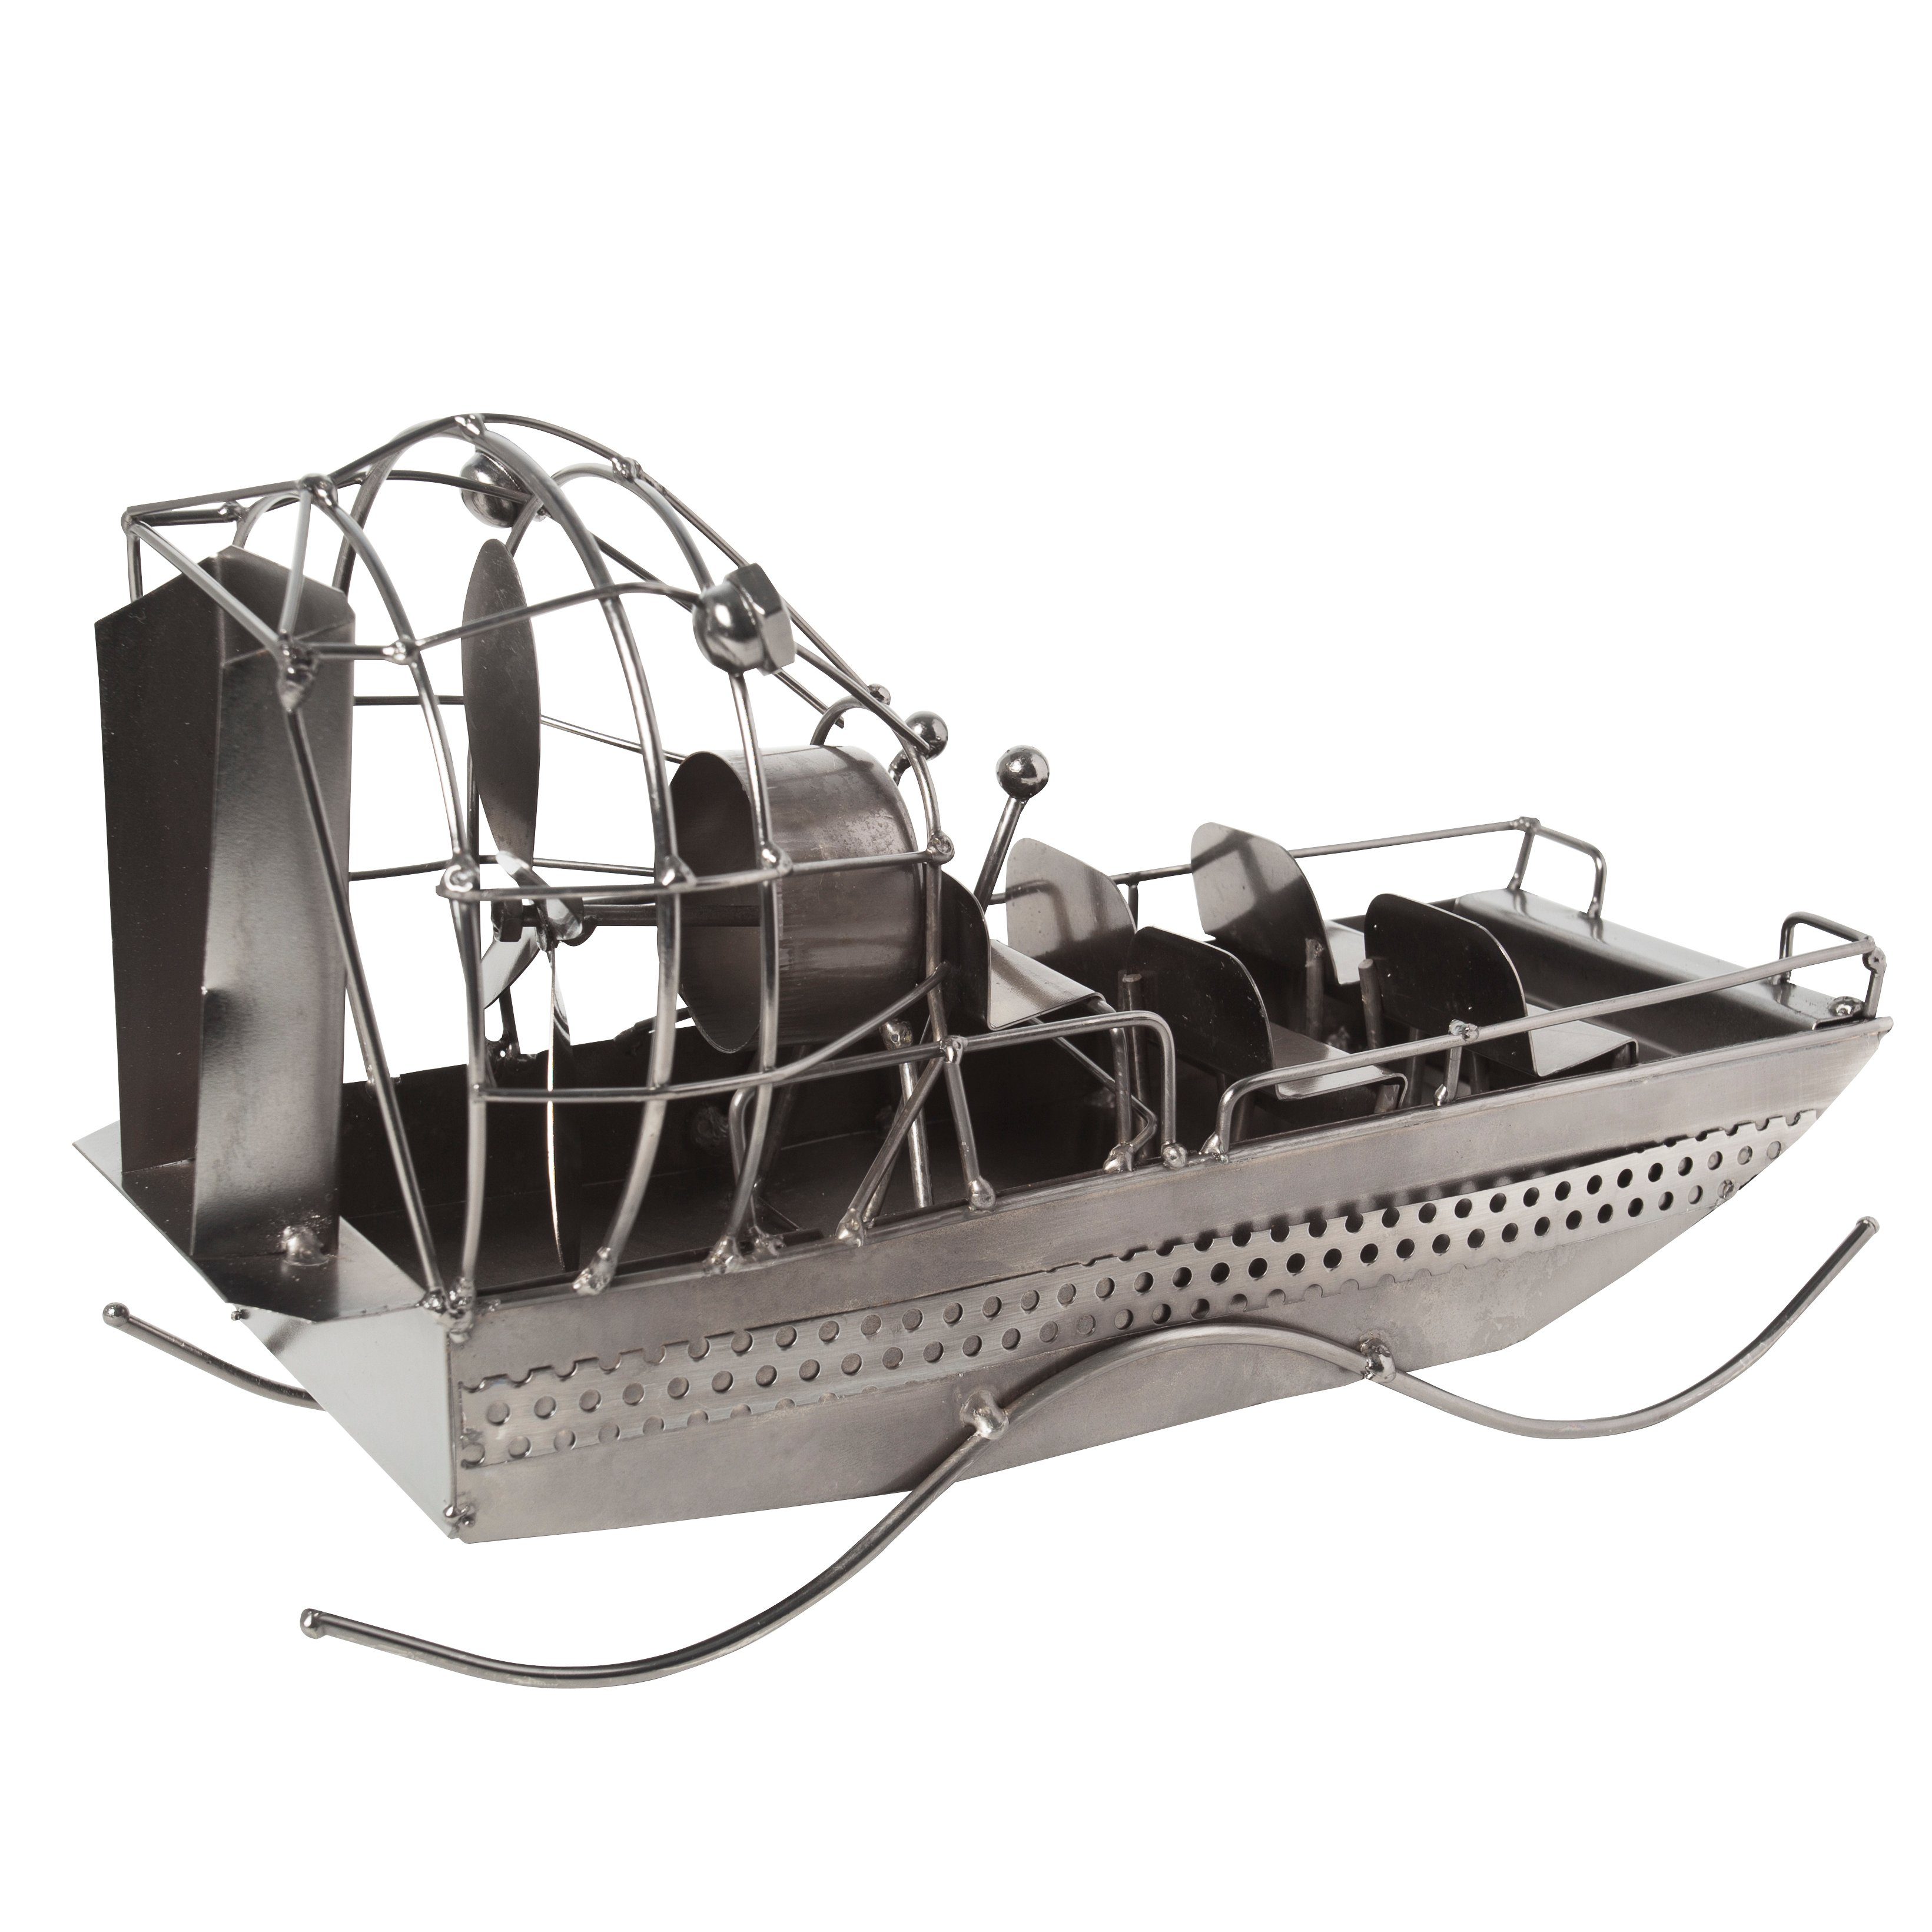 BRUBAKER Dekofigur Metallskulptur Airboat Sumpfboot, Freizeitkapitäne von kunstvolle für und Propellerbootfahrer, Fans alle Geschenkfigur Motorbooten